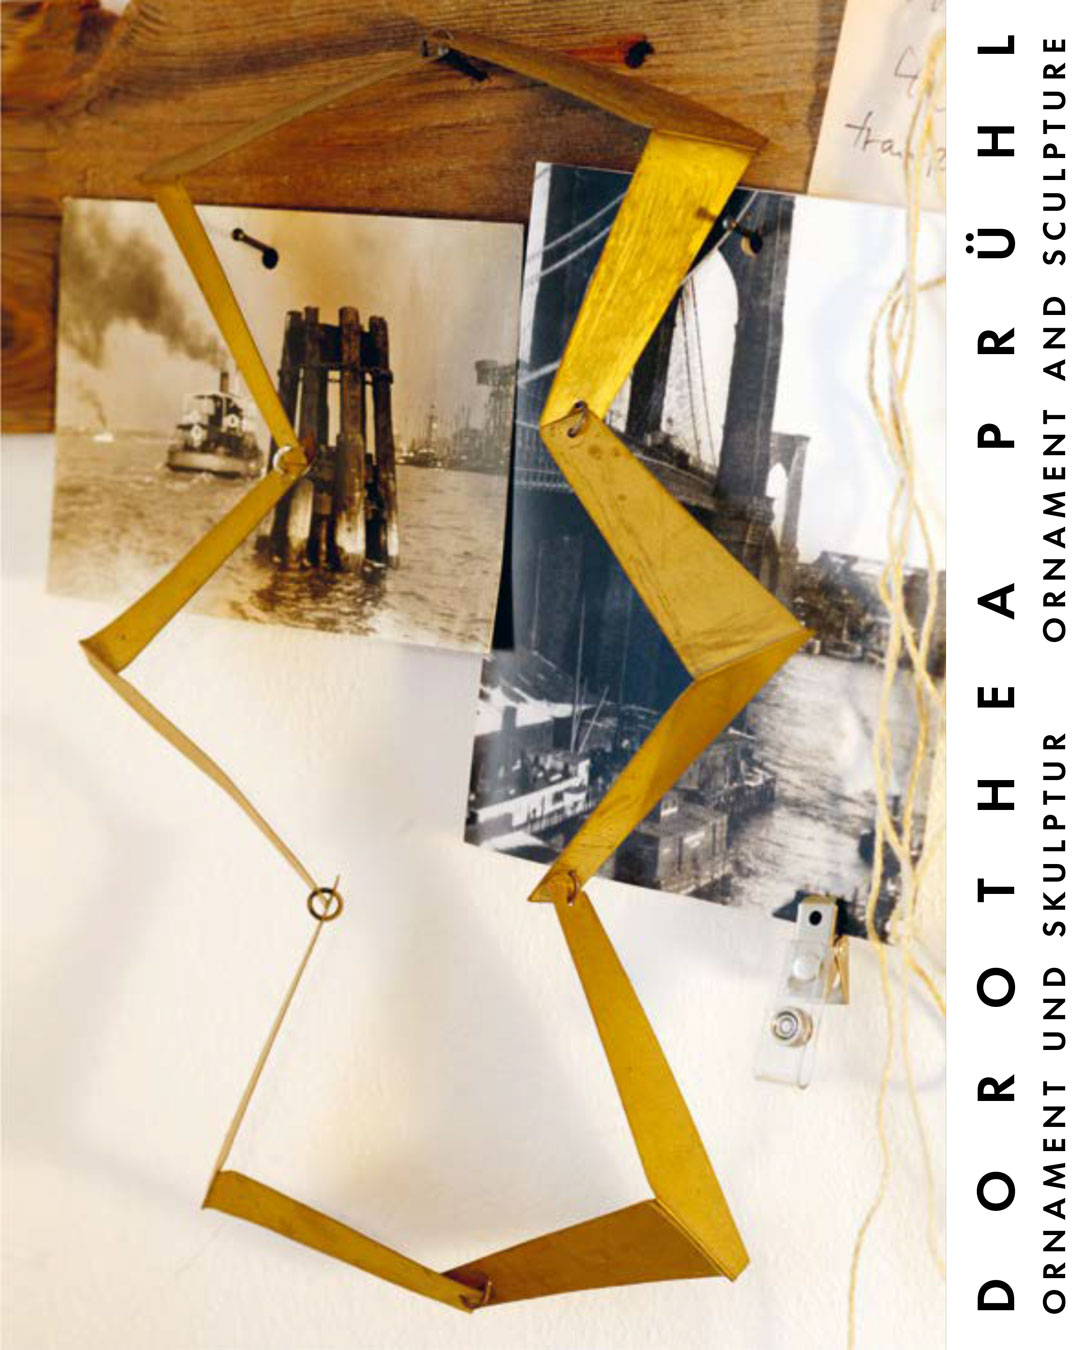 Ornament en Sculpture - boek 2020 - see: >PUBLICATIONS>BOOKS